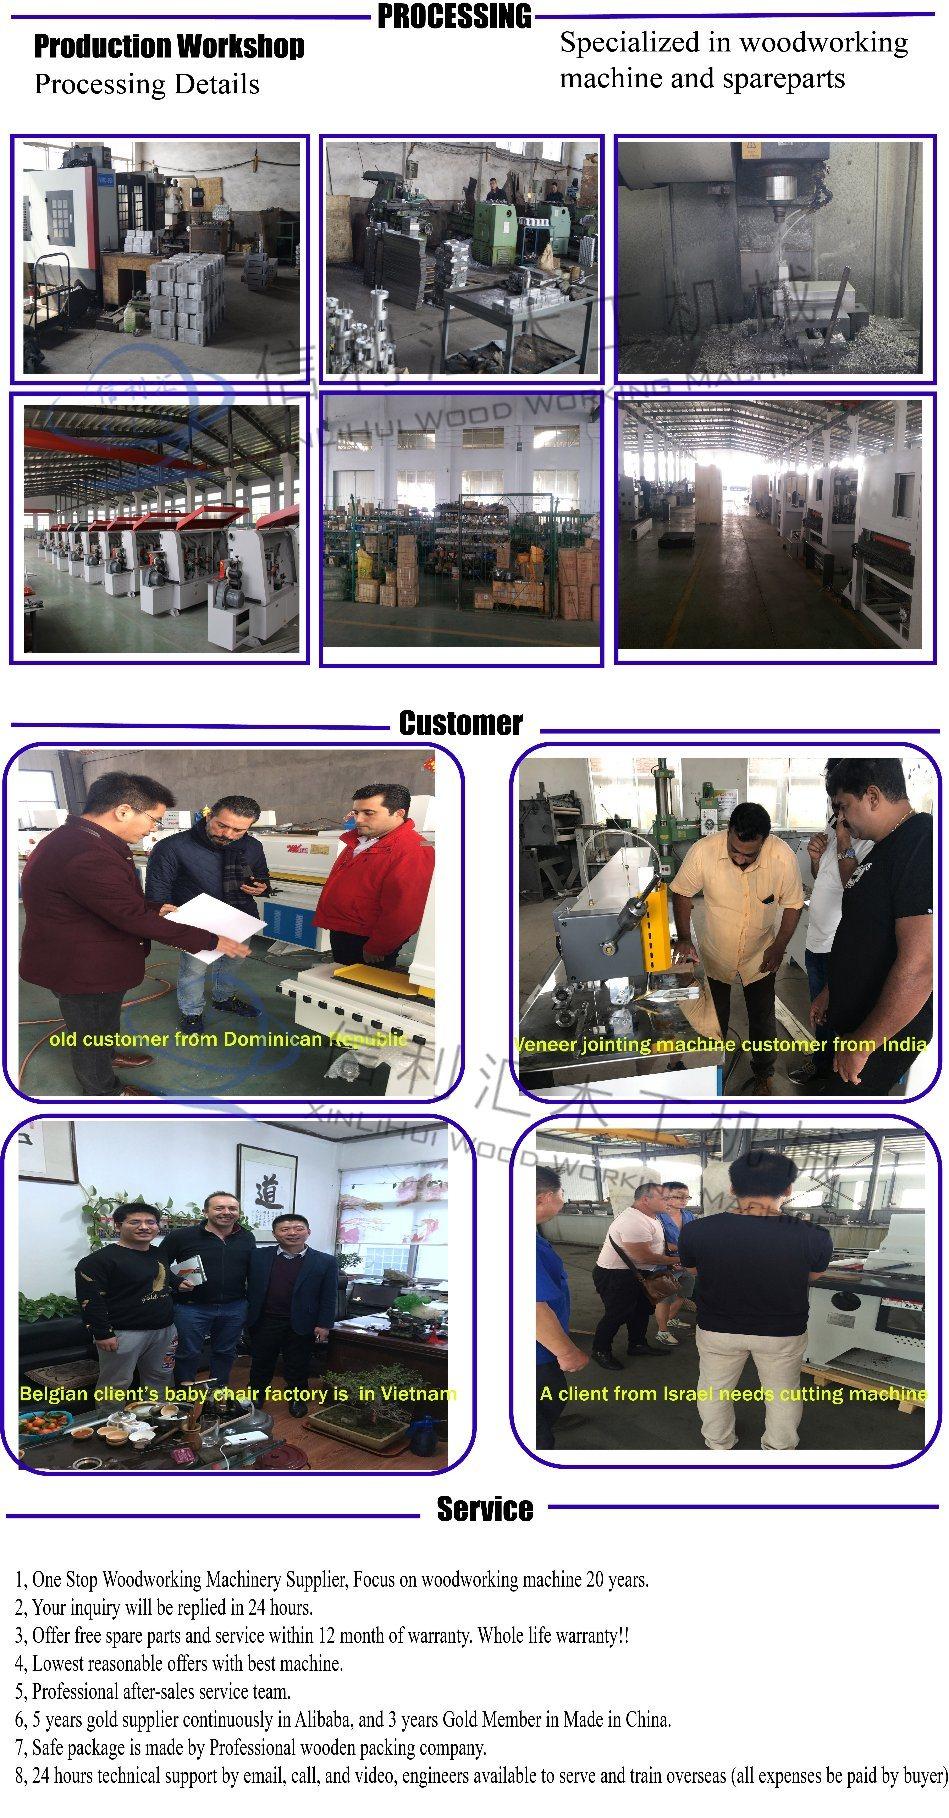 Drilling Furniture Machine, Manufacturing & Processing Machinery, Manufacturing & Processing Machinery Furniture, Timber Processing Machinery